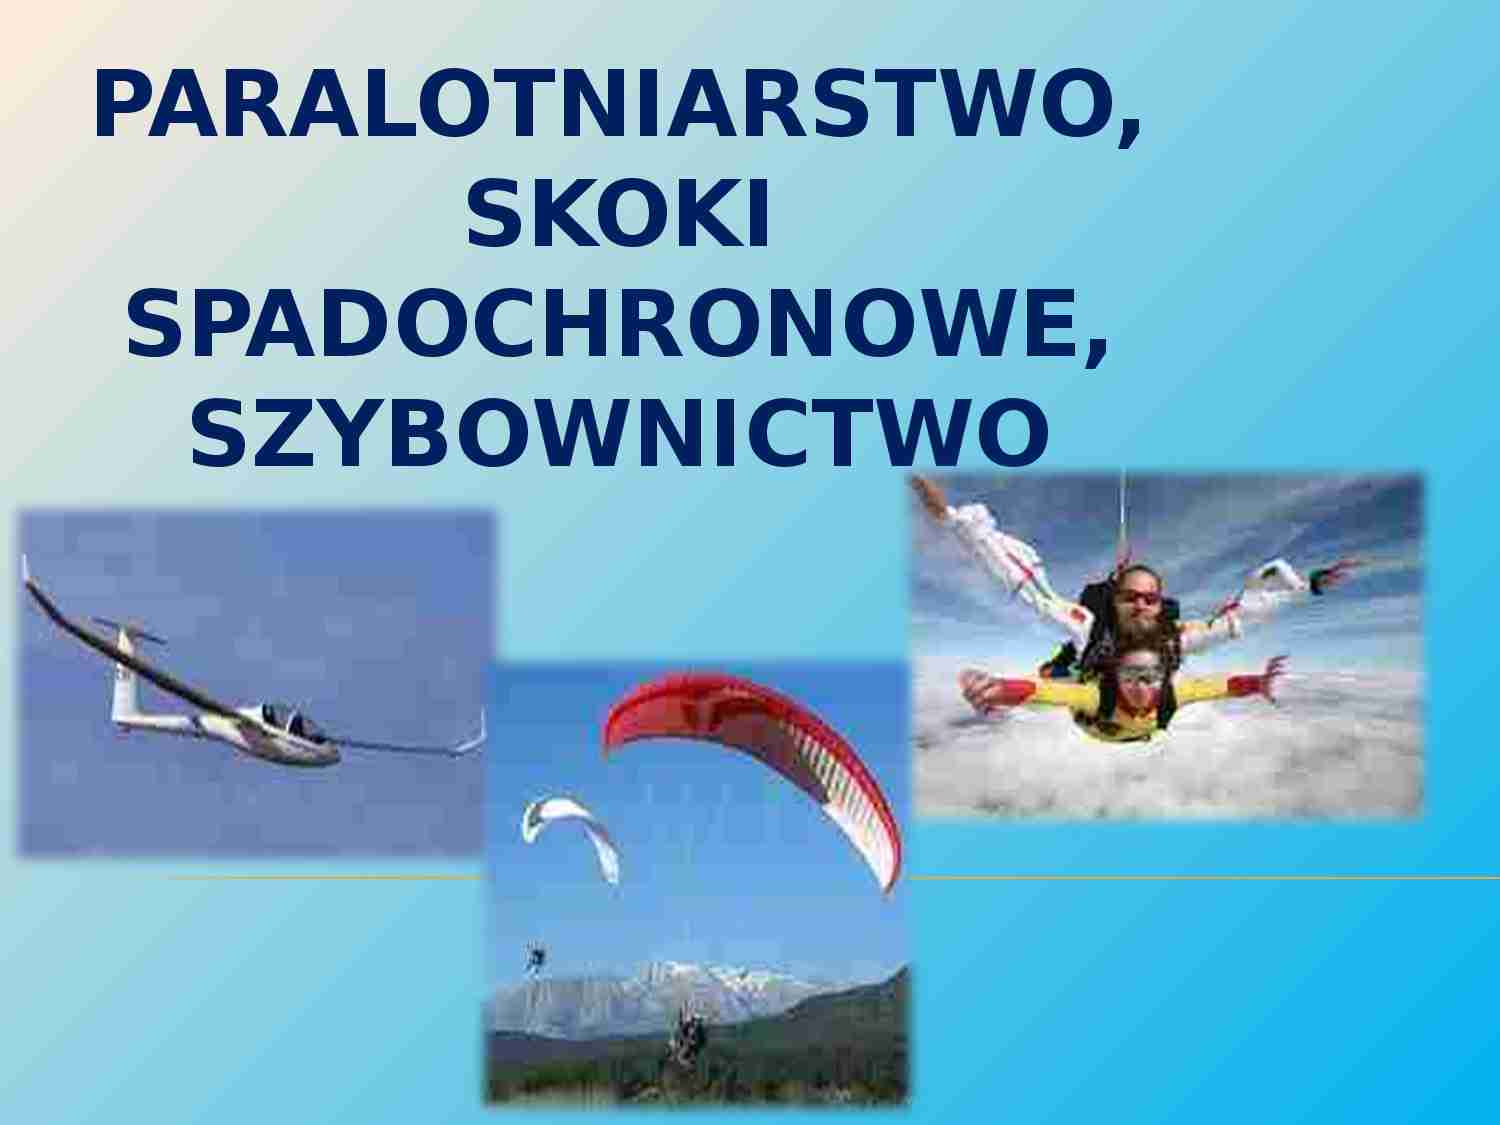 Paralotnictwo, szybownictwo, skoki na spadochronie - strona 1